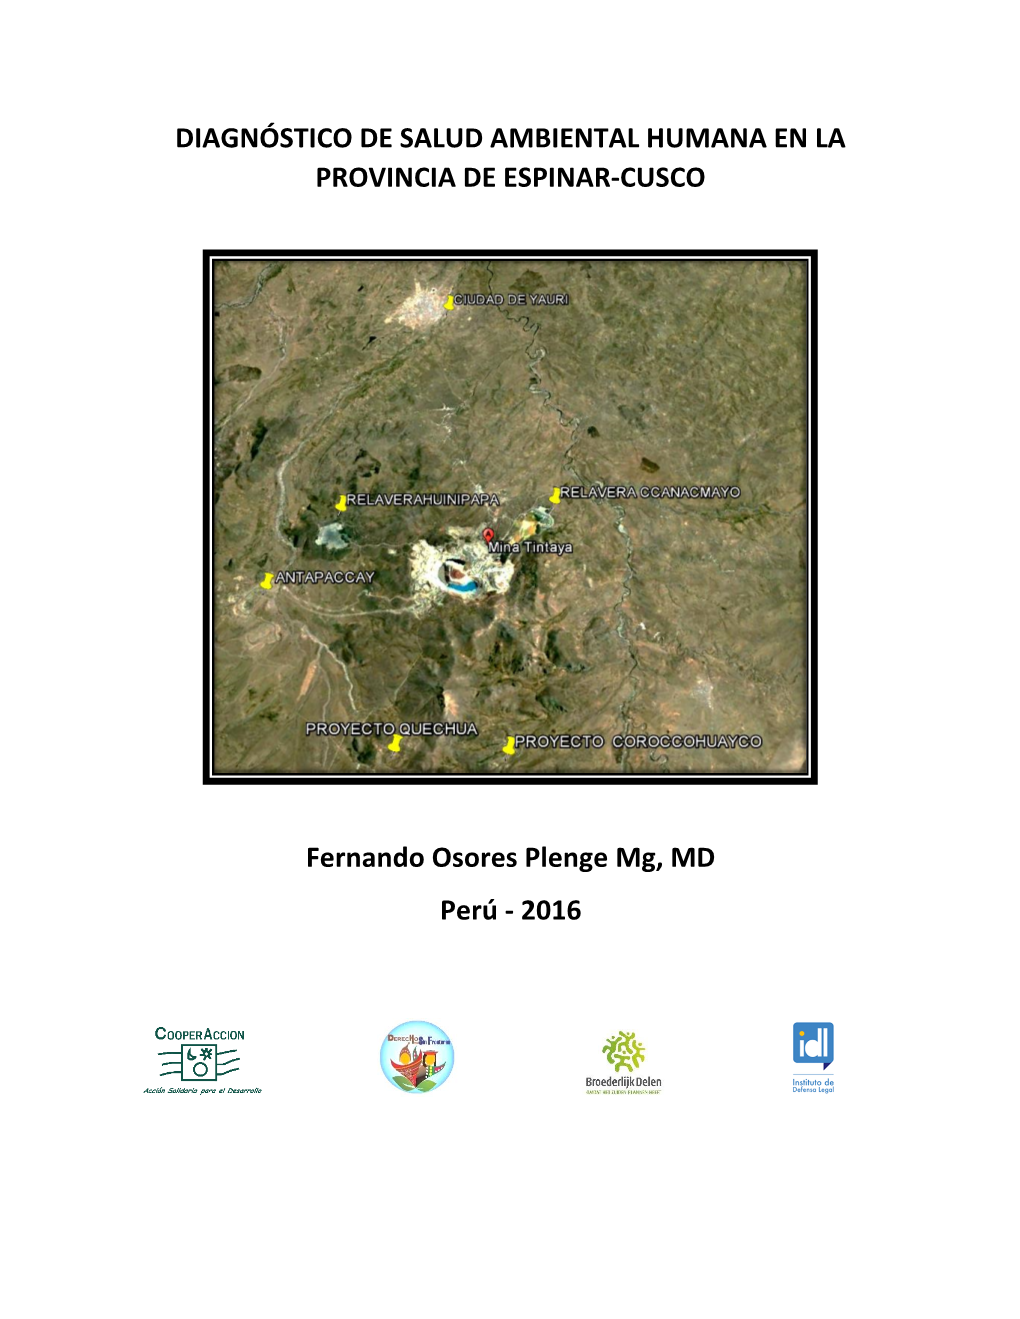 Diagnóstico De Salud Ambiental Humana En La Provincia De Espinar-Cusco